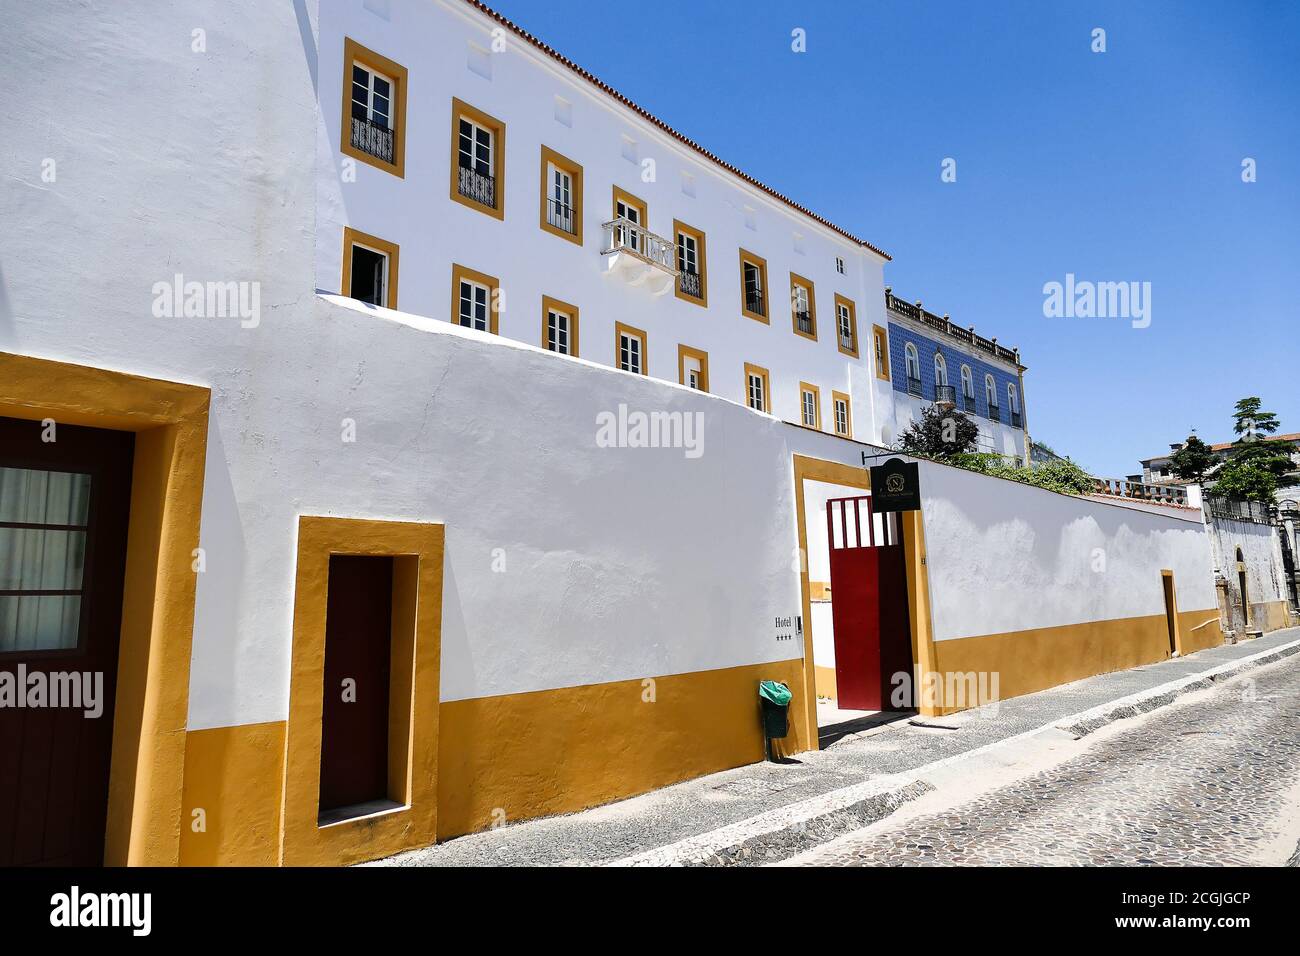 Portugal, Evora Straße mit Häusern mit gelb bemalten Fassaden. Evora ist die Hauptstadt der Region Alentejo. Das historische Zentrum ist eines der am meisten im Stockfoto